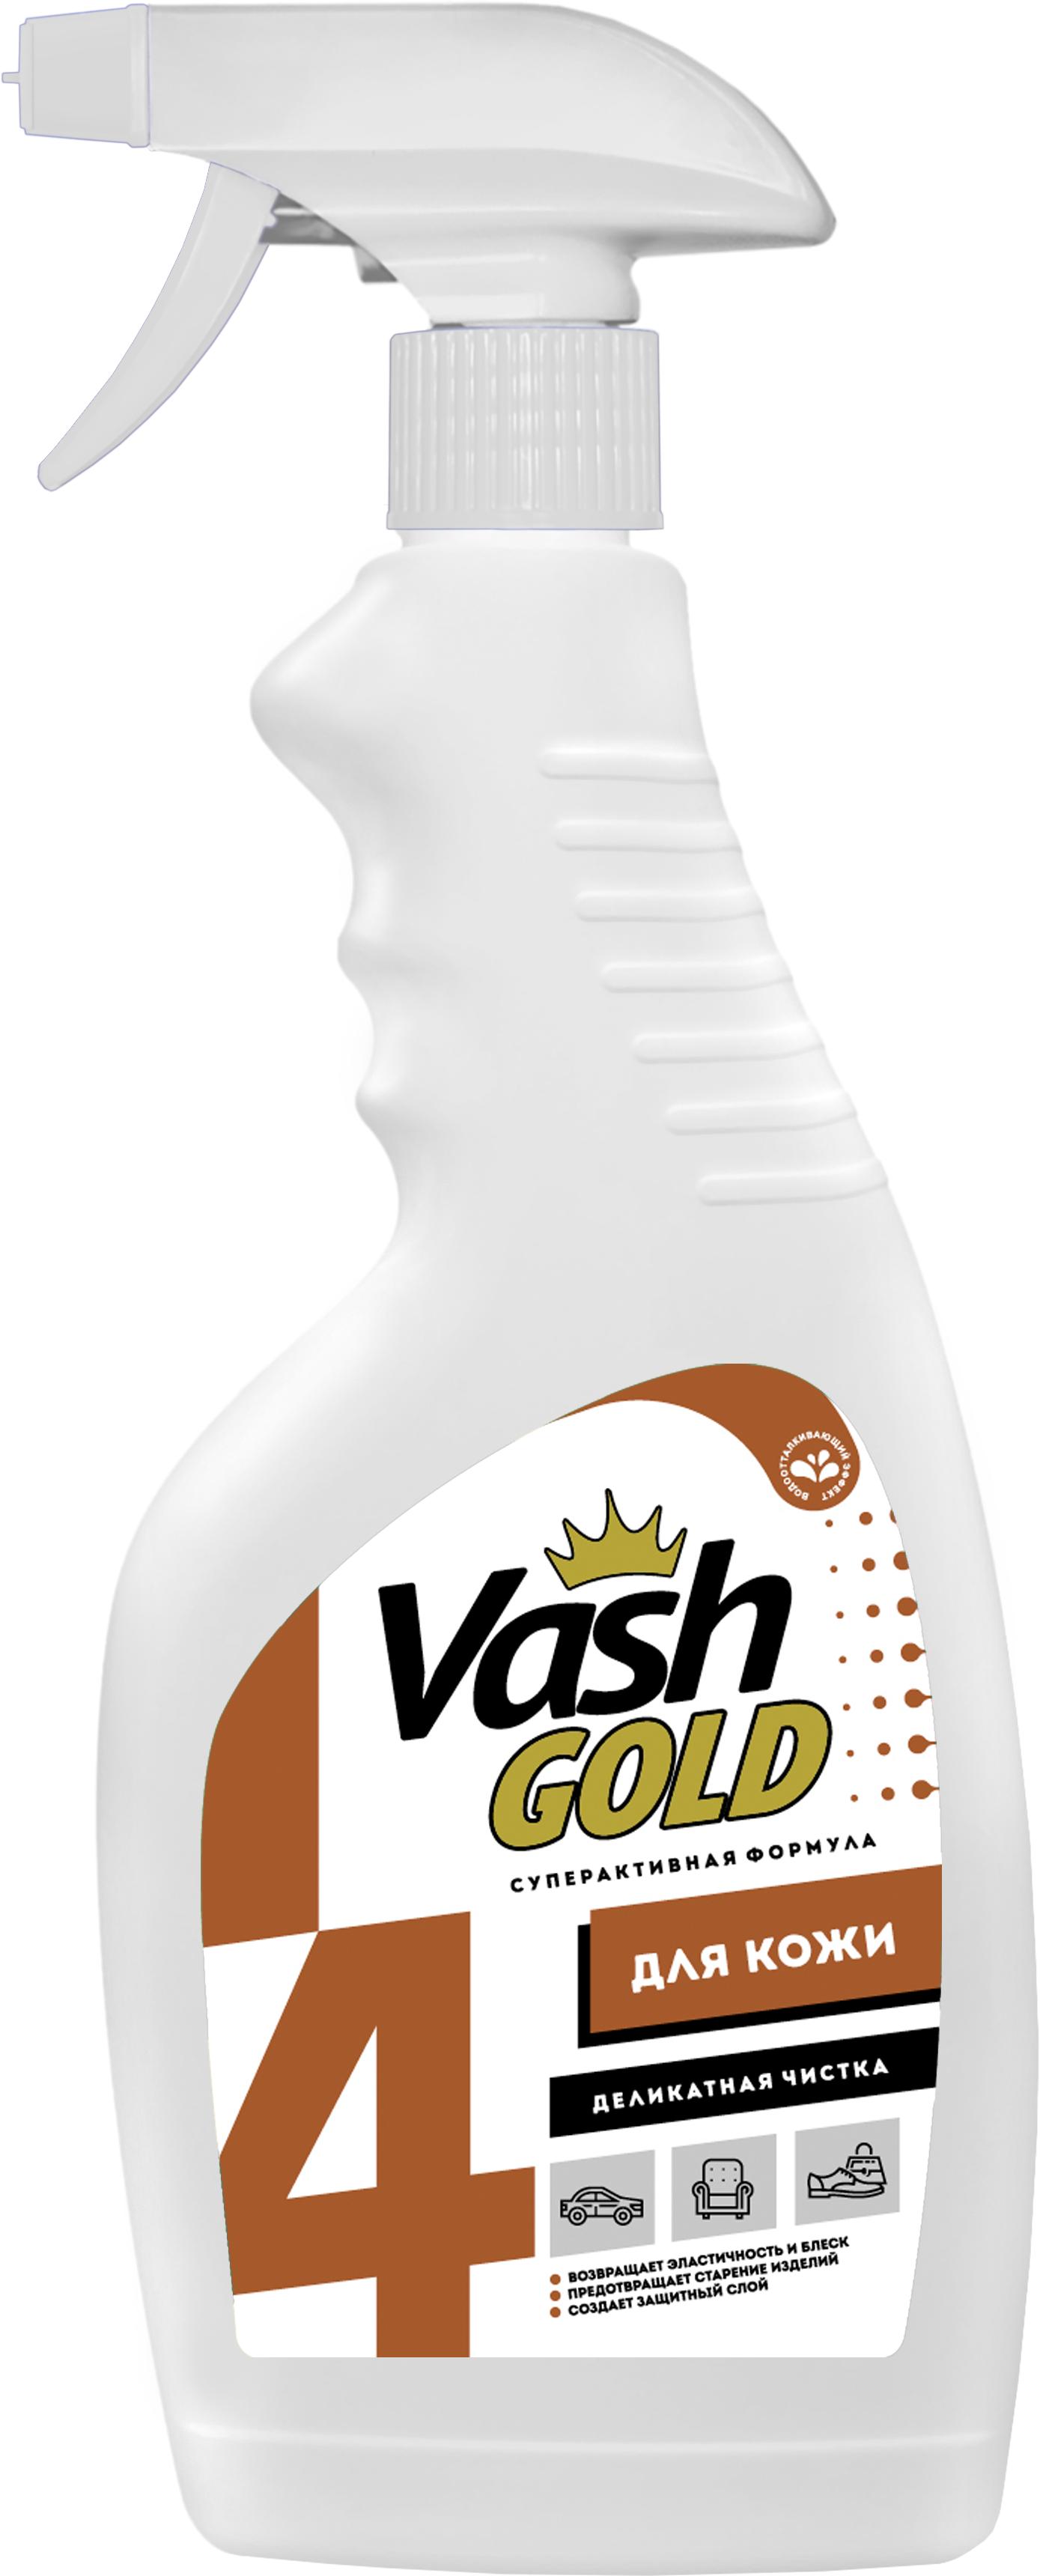 Средство для чистки изделий из кожи Vash GOLD (спрей), 500 мл., ПЭТ